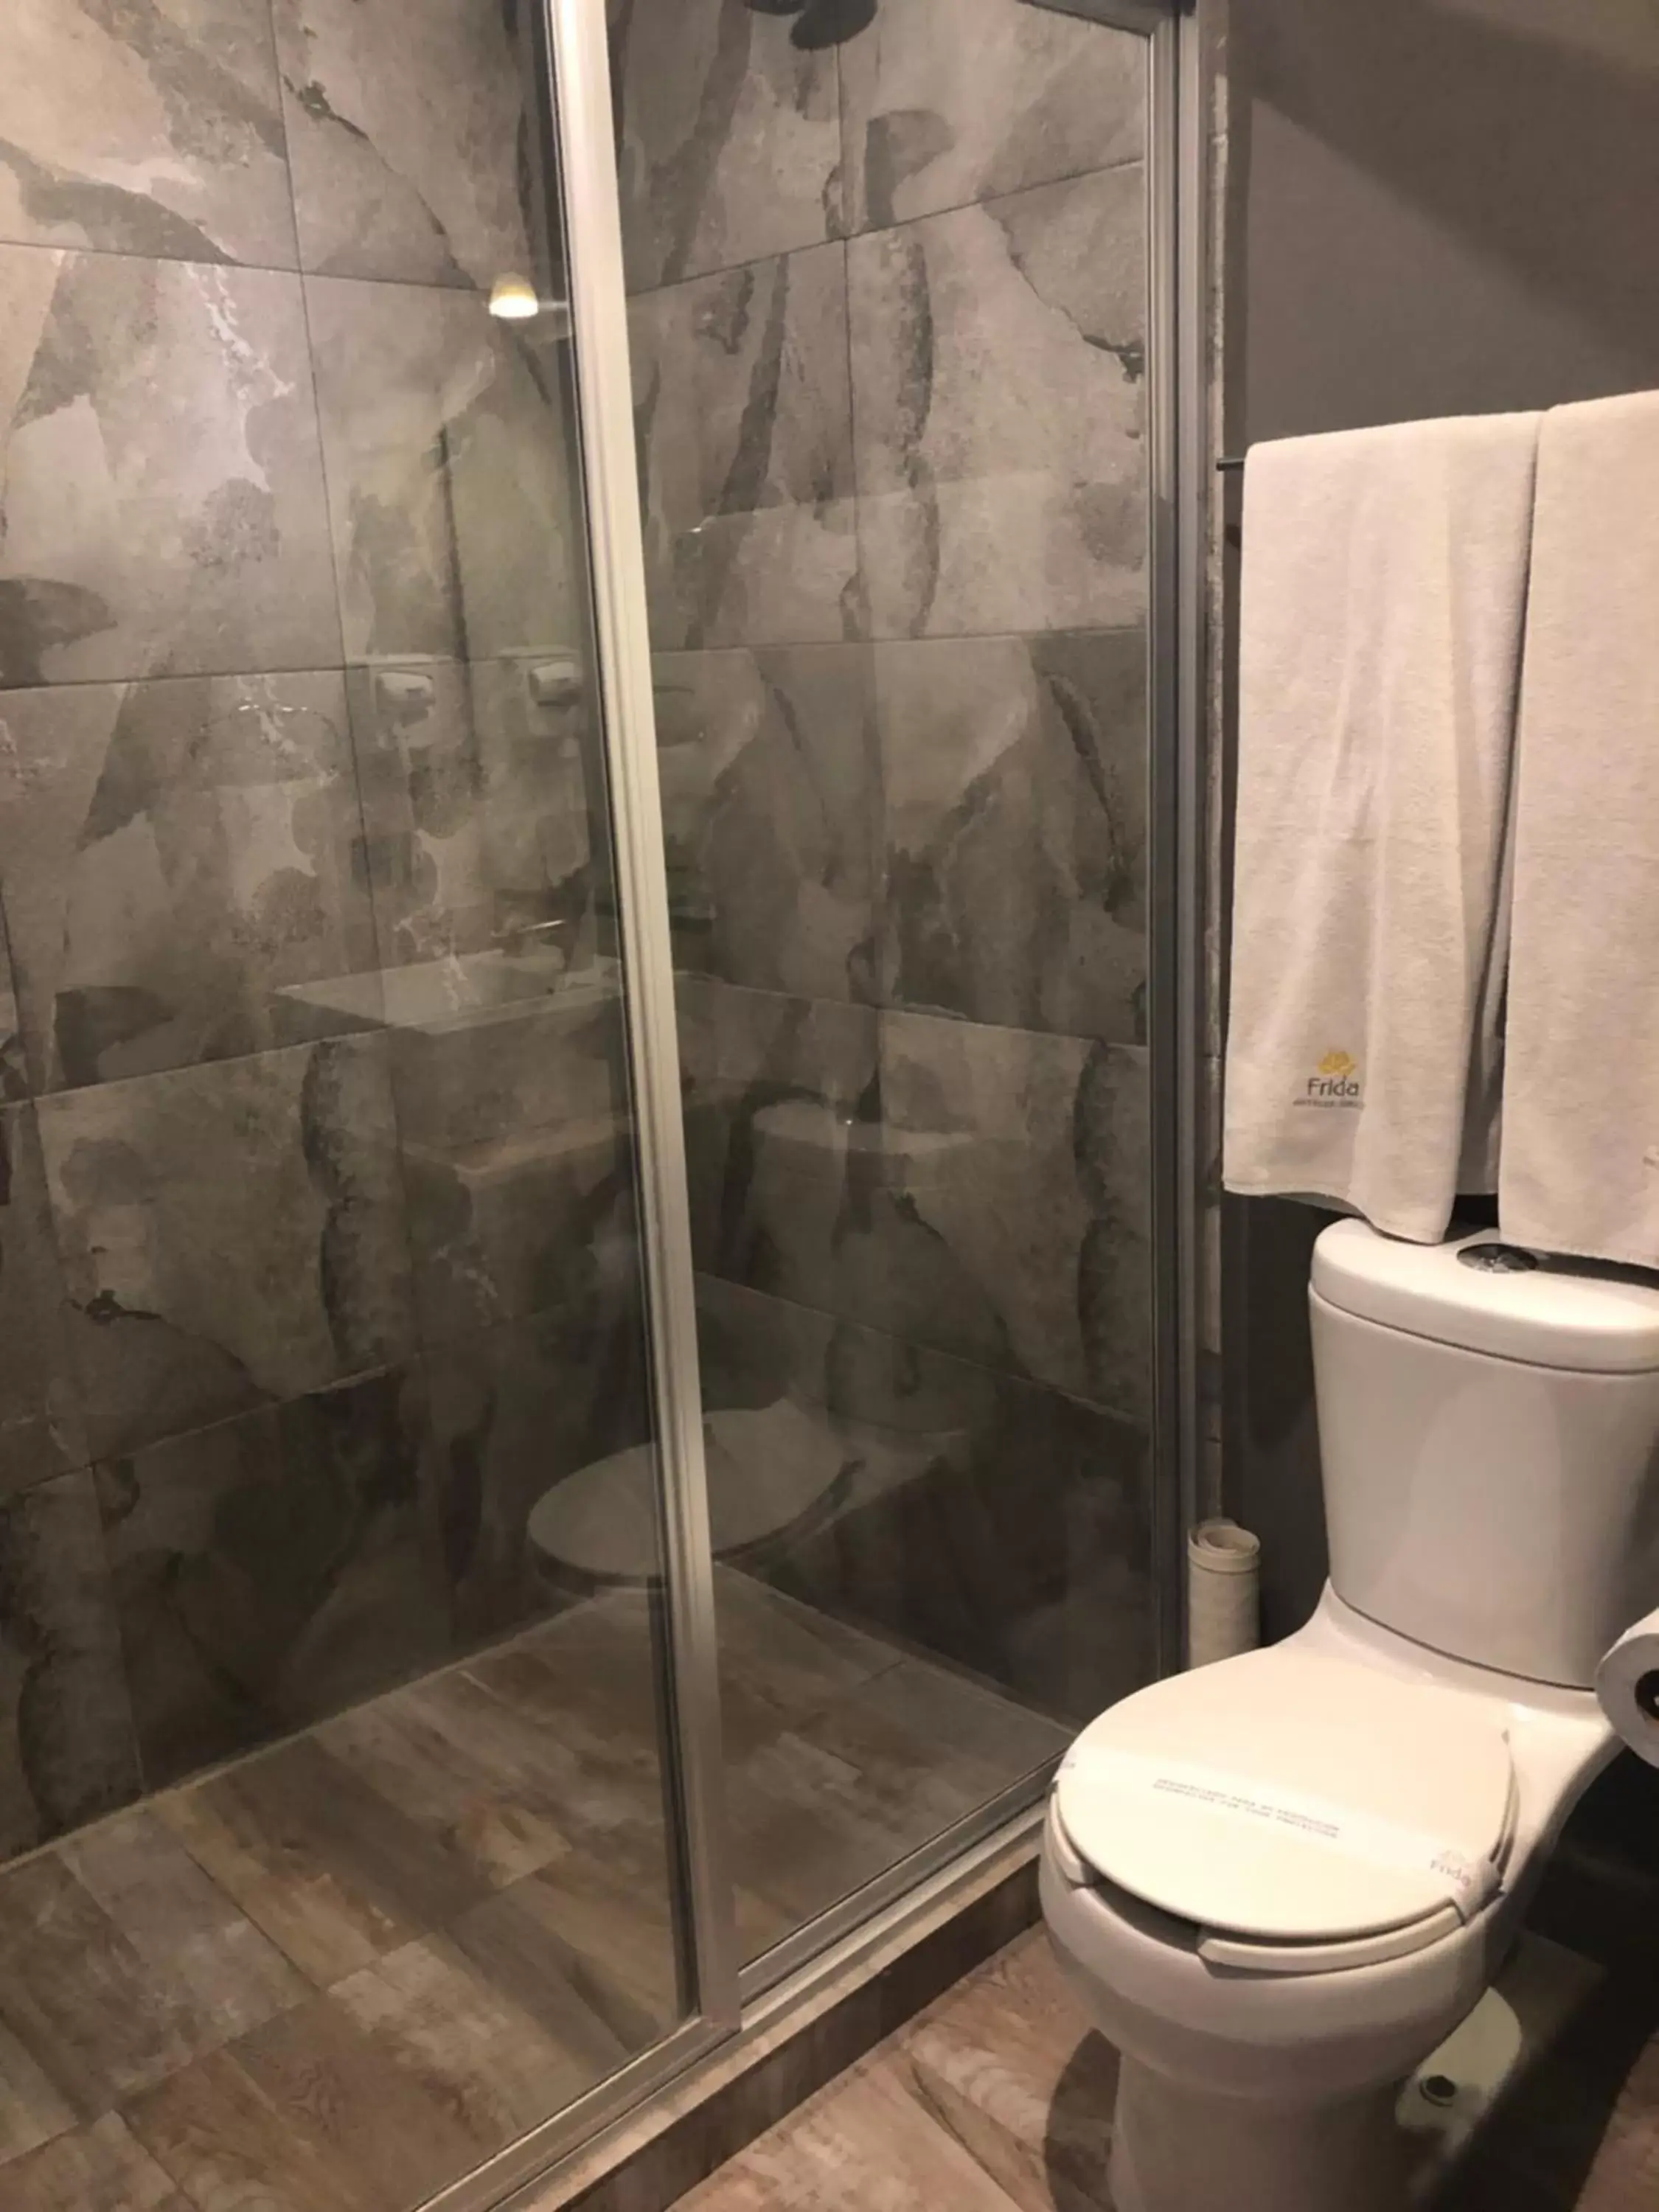 Bathroom in Hotel Frida